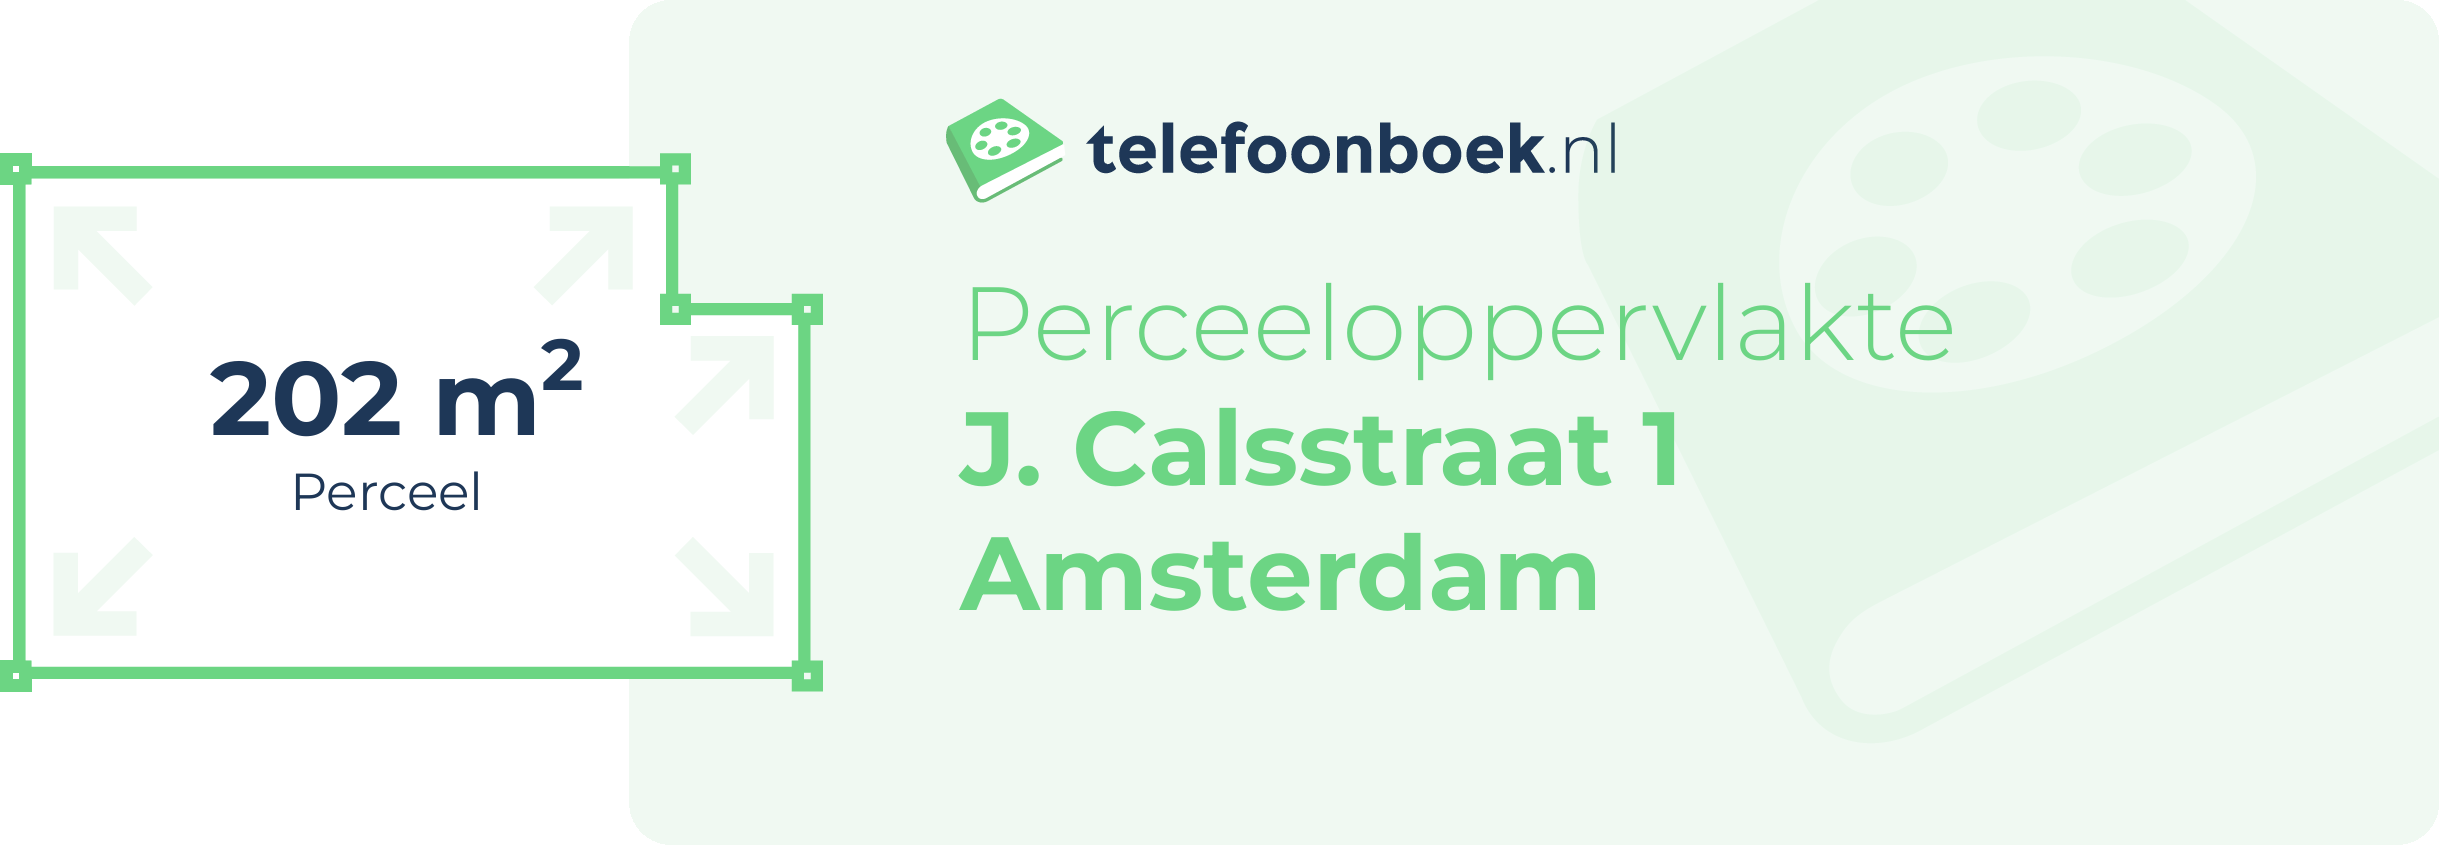 Perceeloppervlakte J. Calsstraat 1 Amsterdam